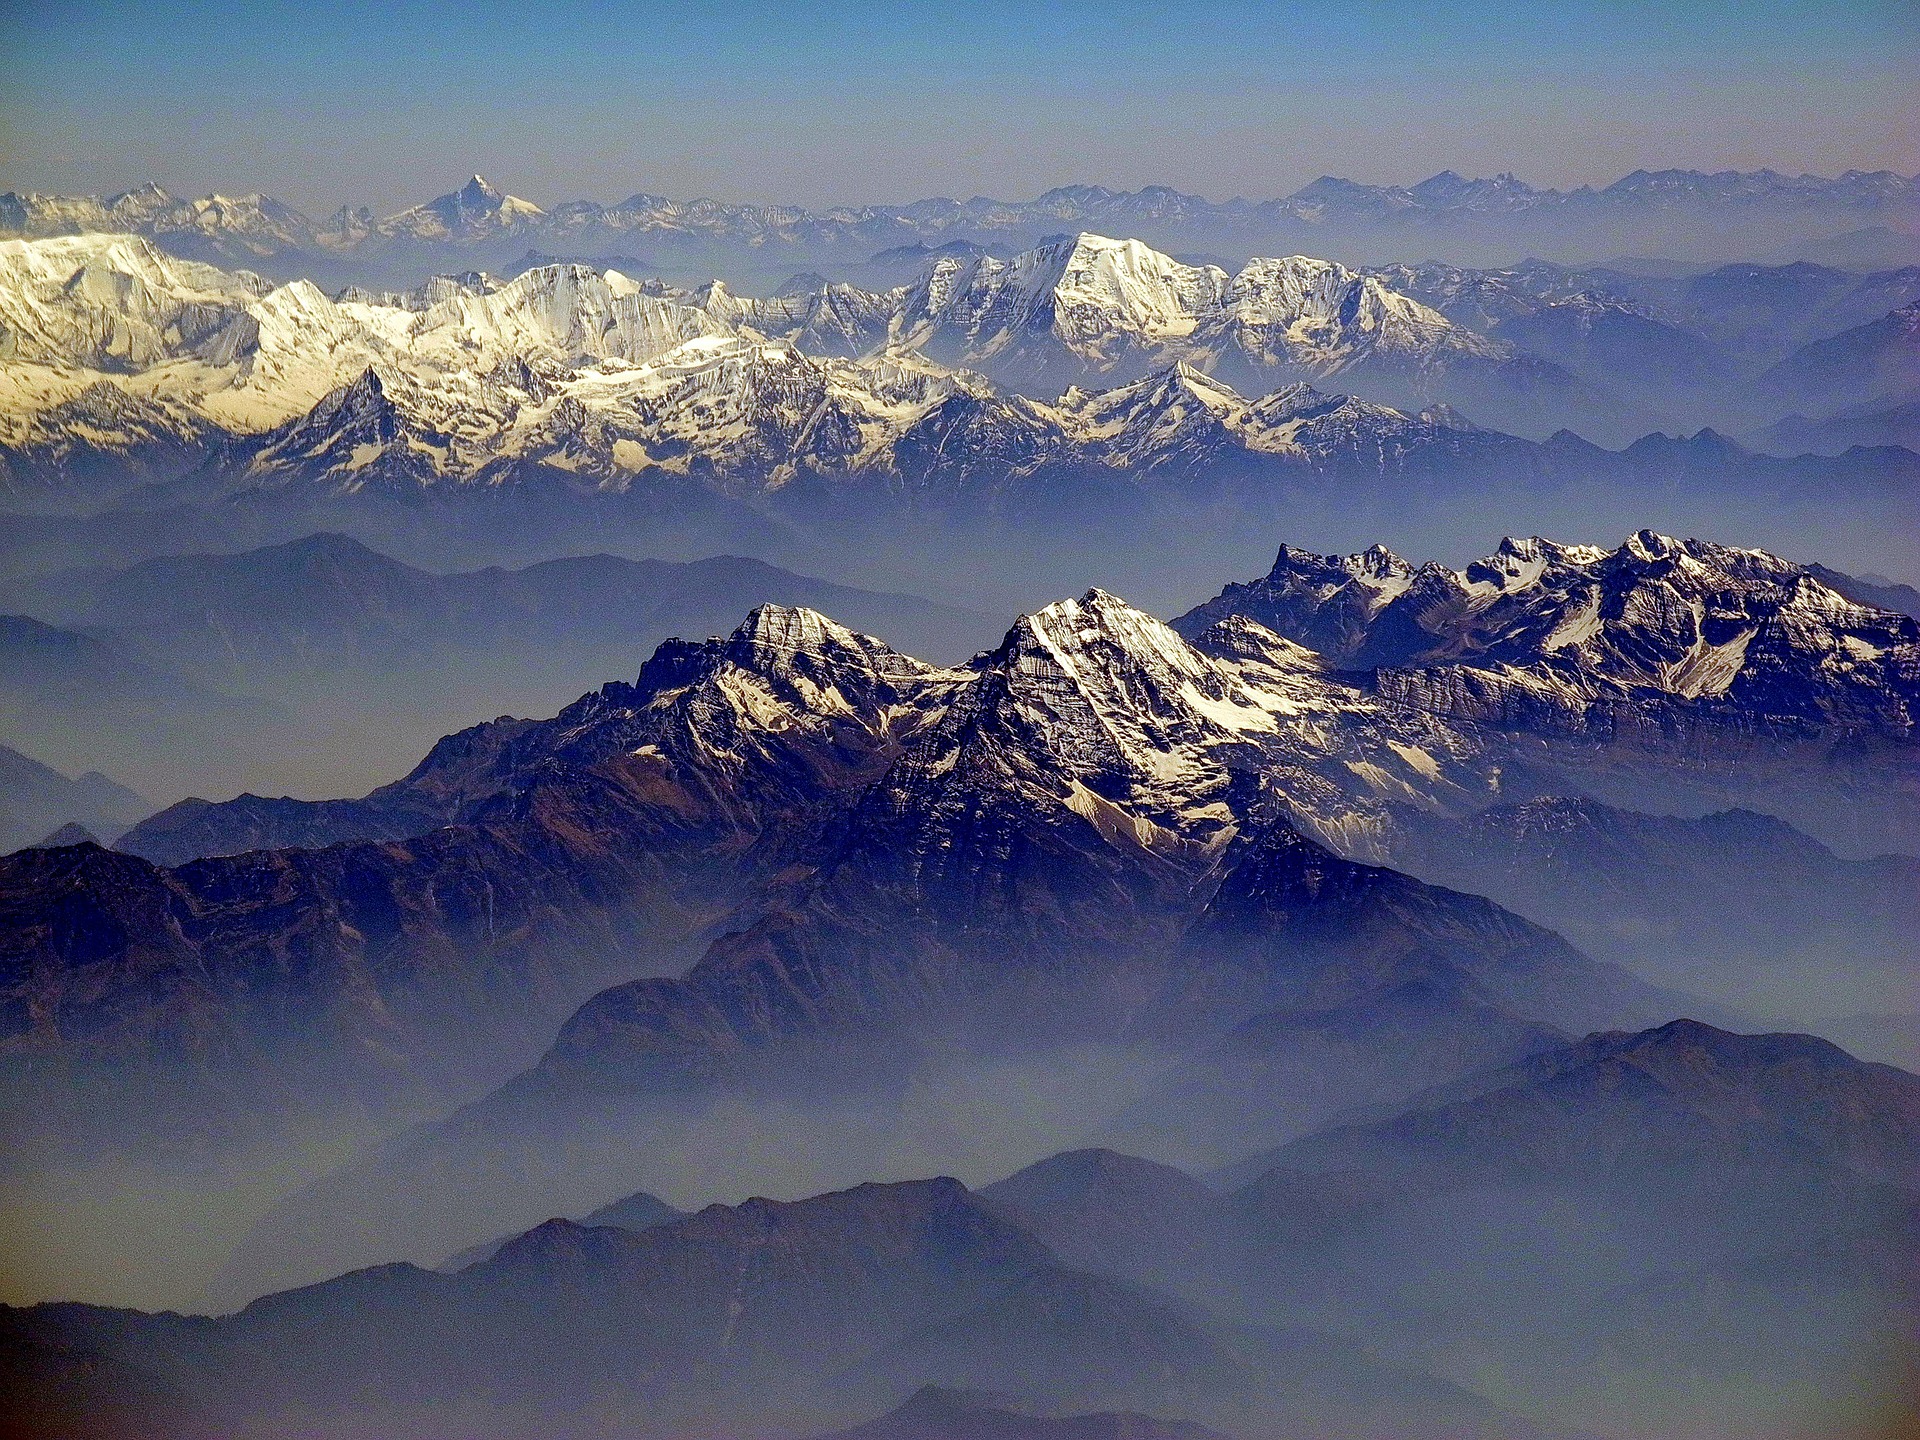 Image showing himalayan mountains